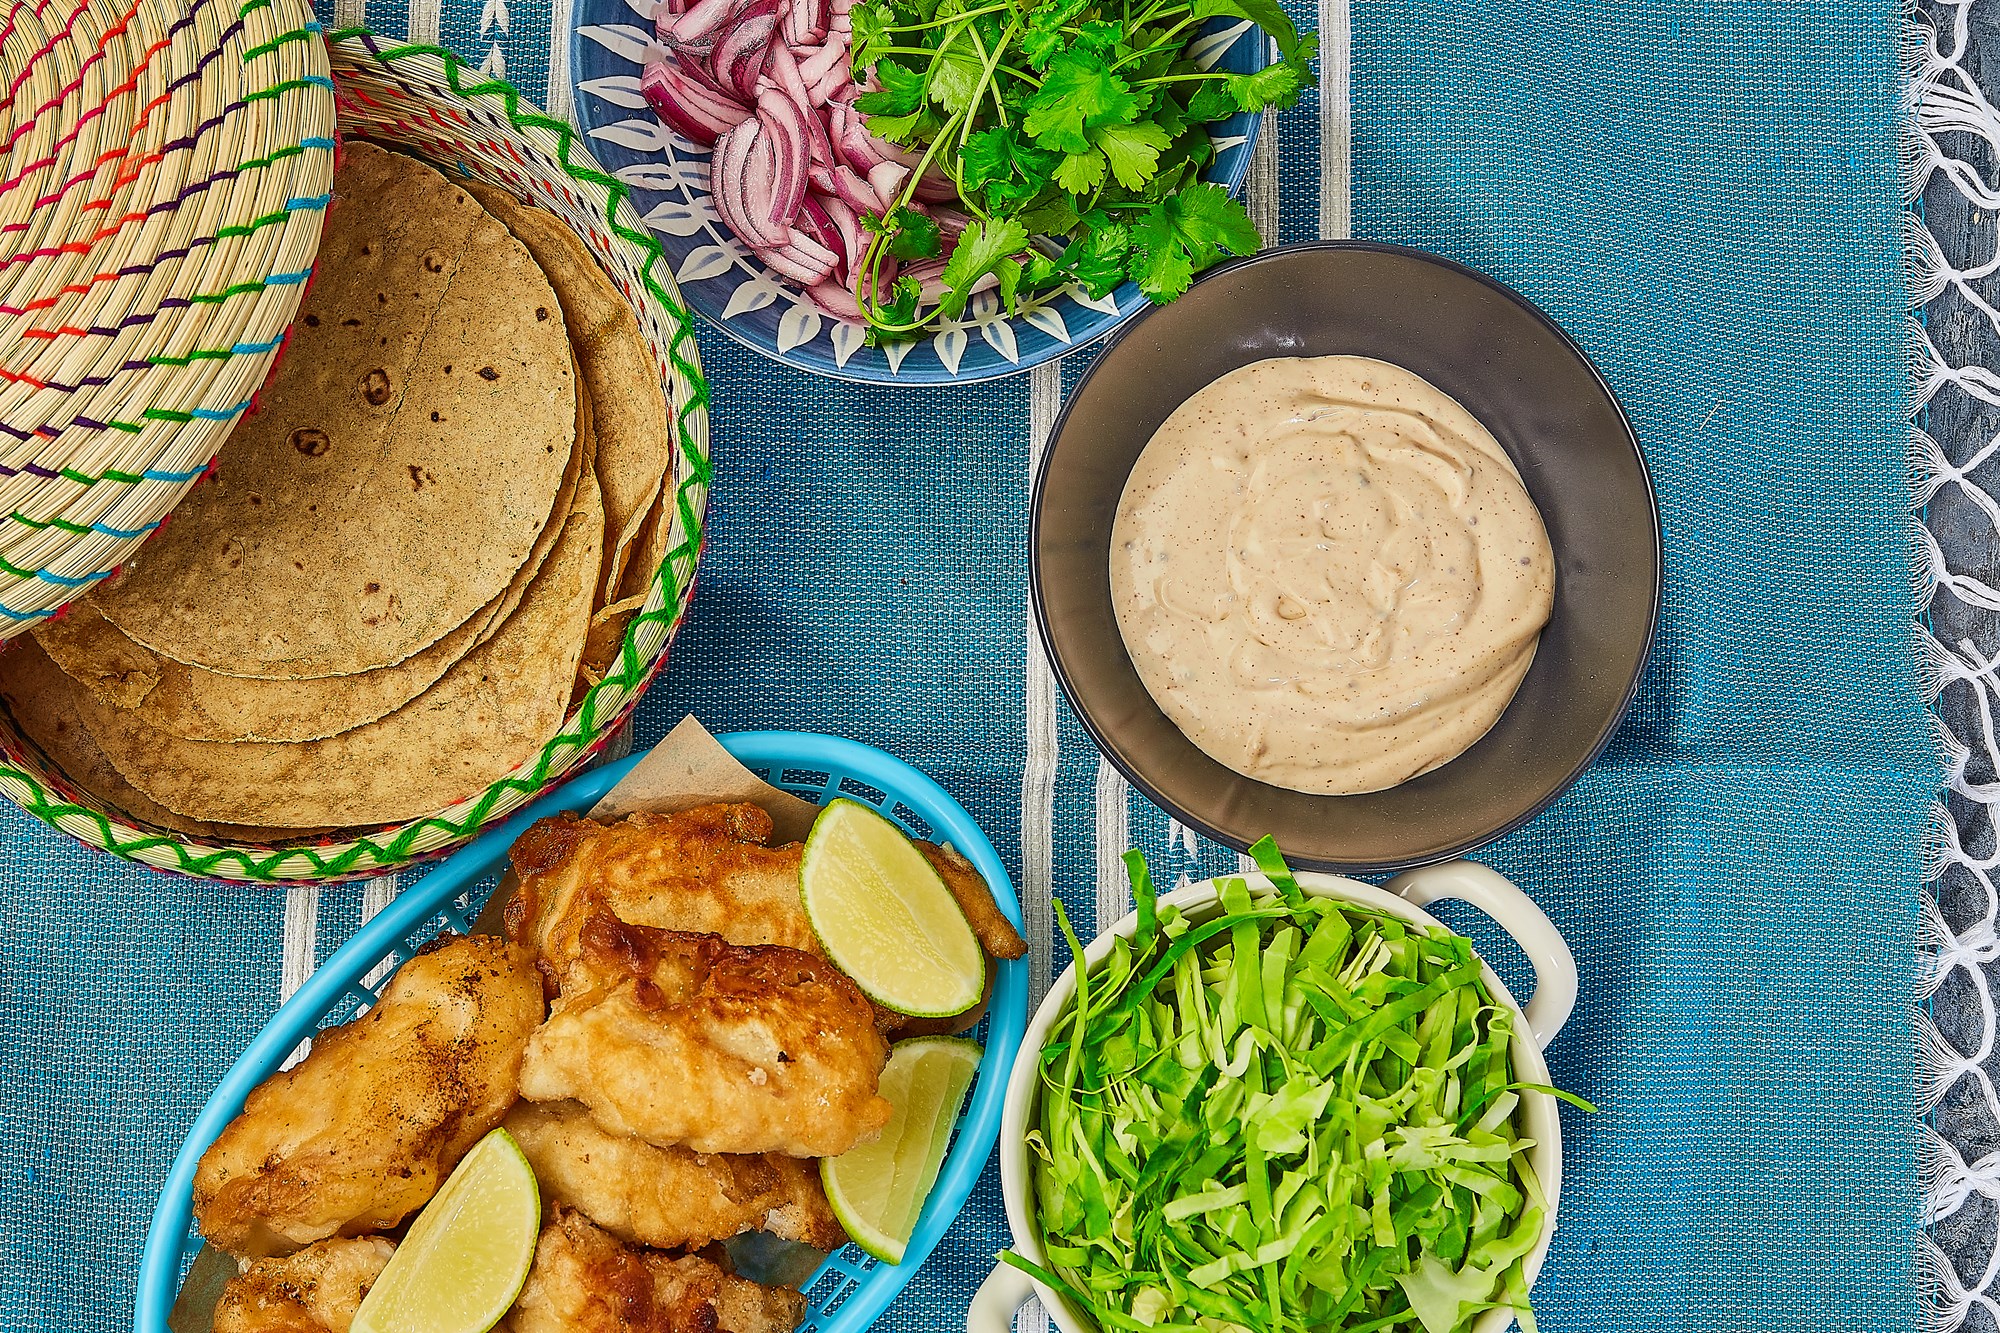 Baja style fiske-tacos med mørksej spidskål, chilisyltede rødløg, koriander & chipotledressing